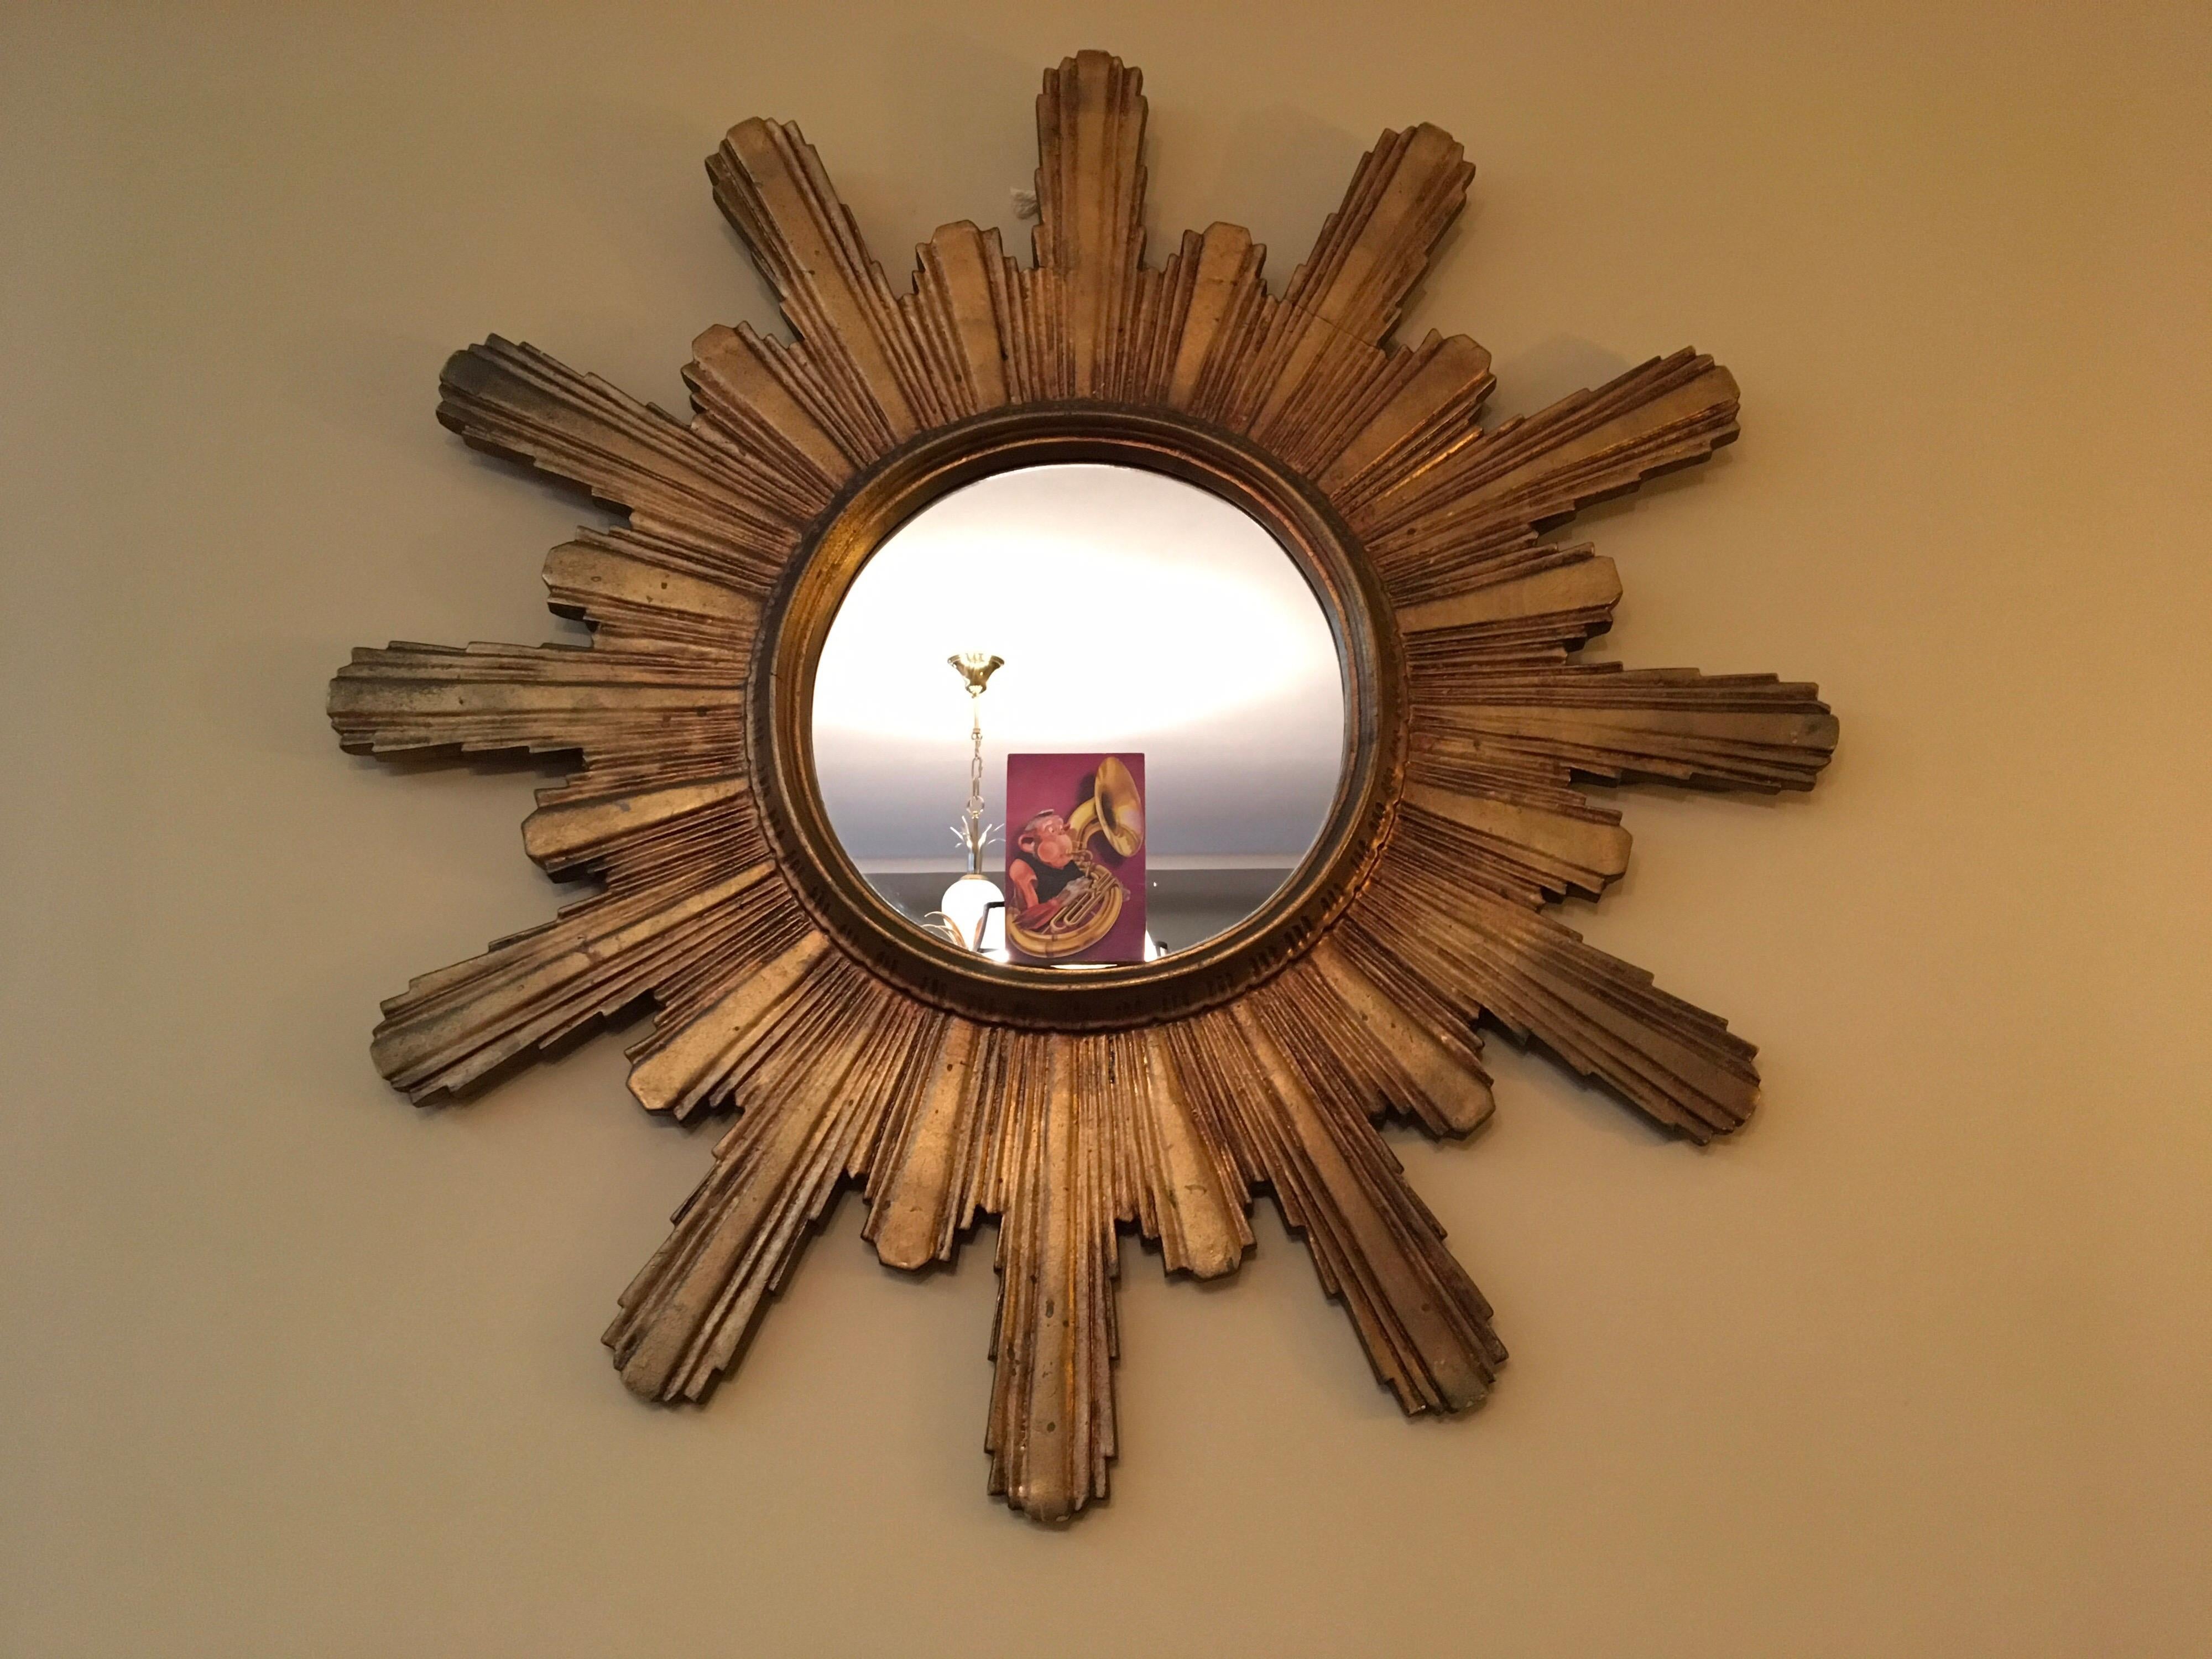 Spektakulärer großer vergoldeter Holzspiegel mit Sonnenschliff oder Starbust-Spiegel. 
Dieser Spiegel aus den 1950er Jahren hat einen vergoldeten, geschnitzten Holzrahmen.
Der Gesamtdurchmesser dieses großen hölzernen Sonnenschliff-Spiegels beträgt